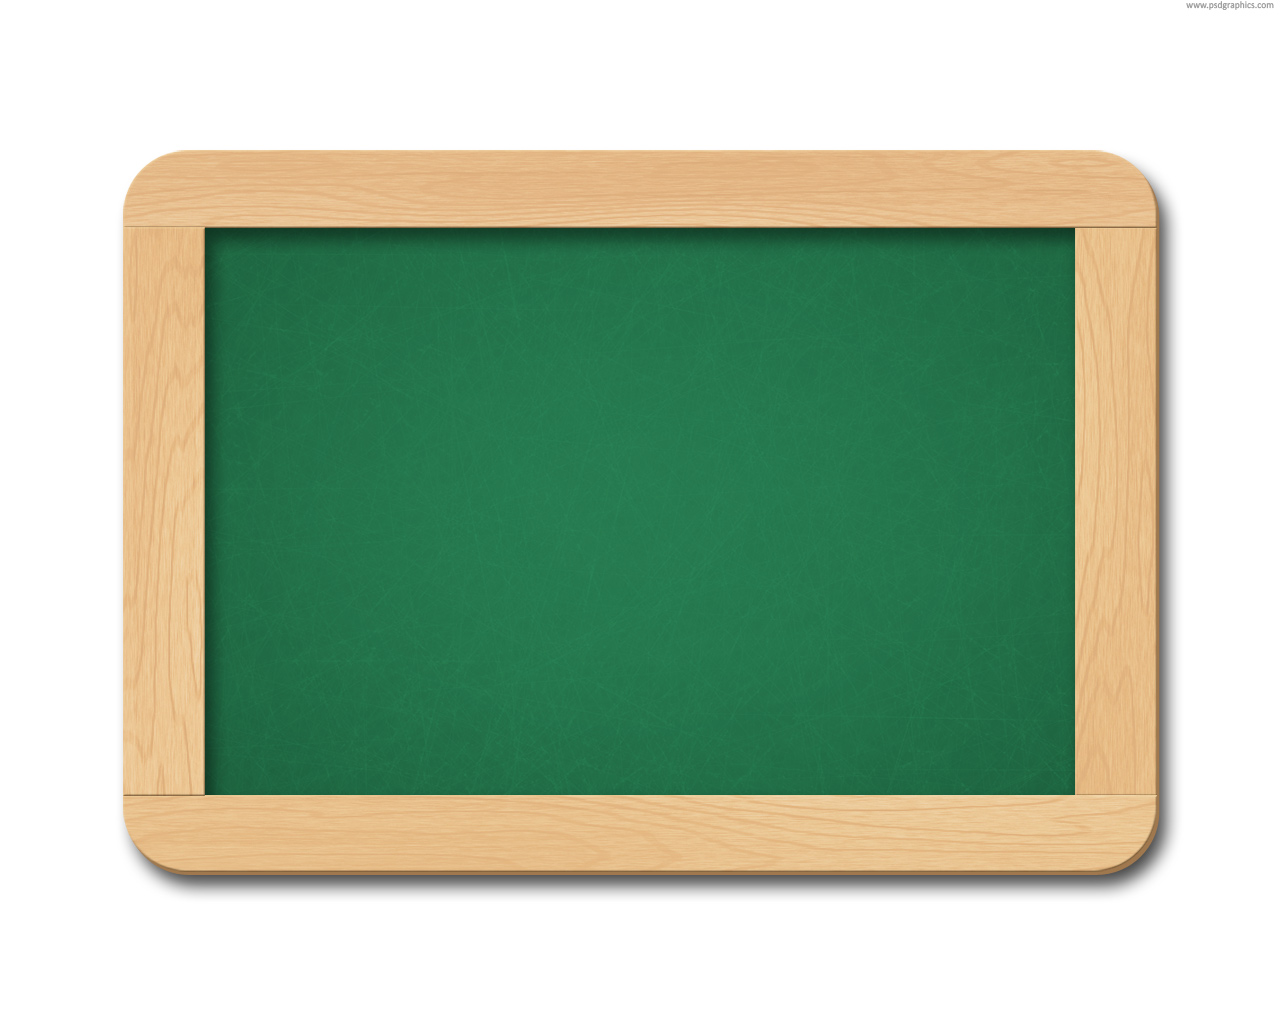 School Chalkboard Backgrounds For Powerpoint | Clipart Panda ...